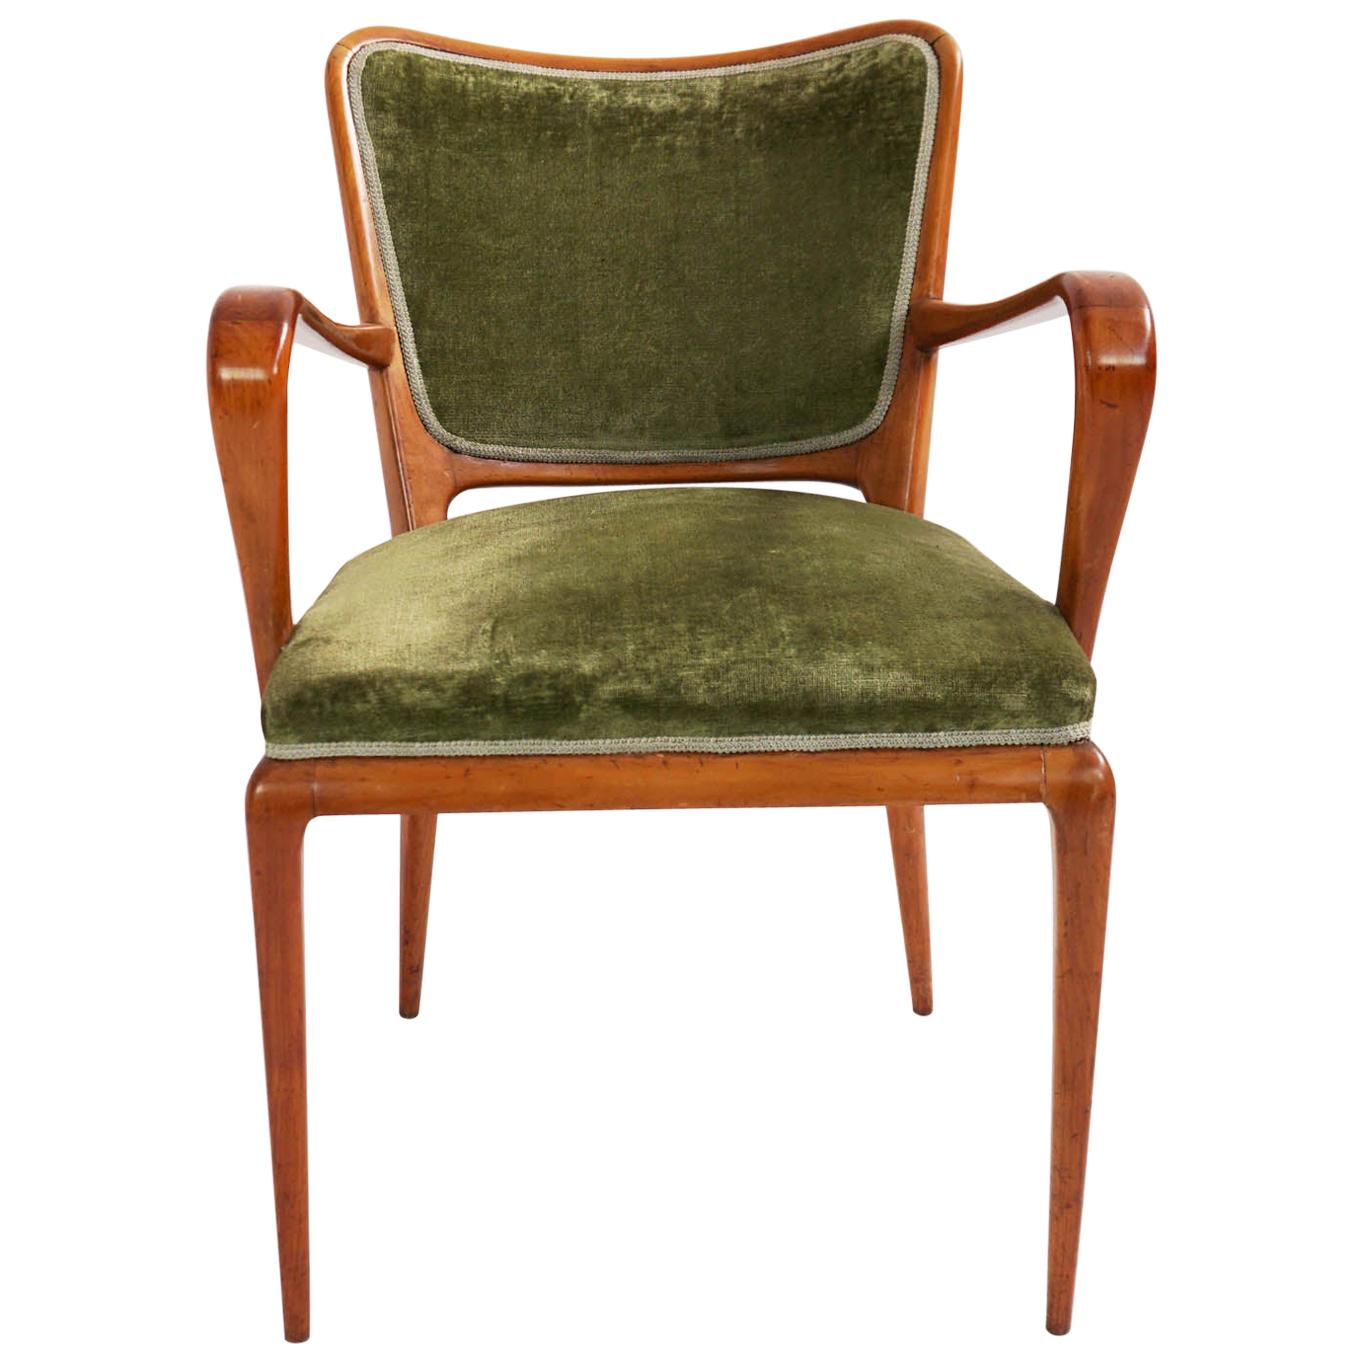 Super Rare Osvaldo Borsani Chairs, 1950 Atelier Borsani Varedo